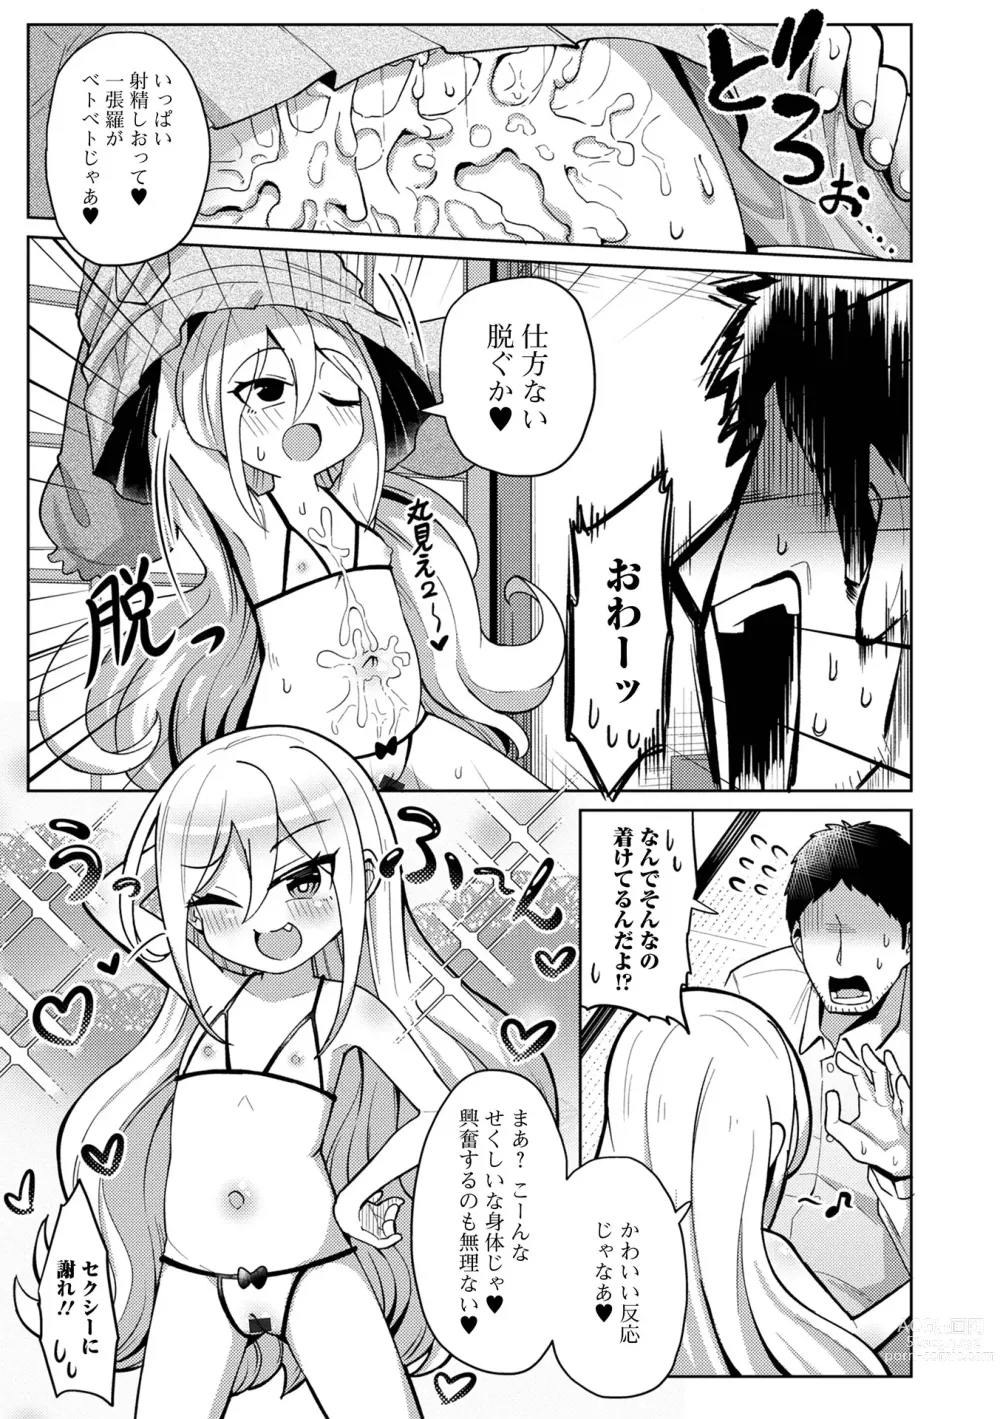 Page 9 of manga Eternal Hime-sama Loli Baba Anthology Vol.1